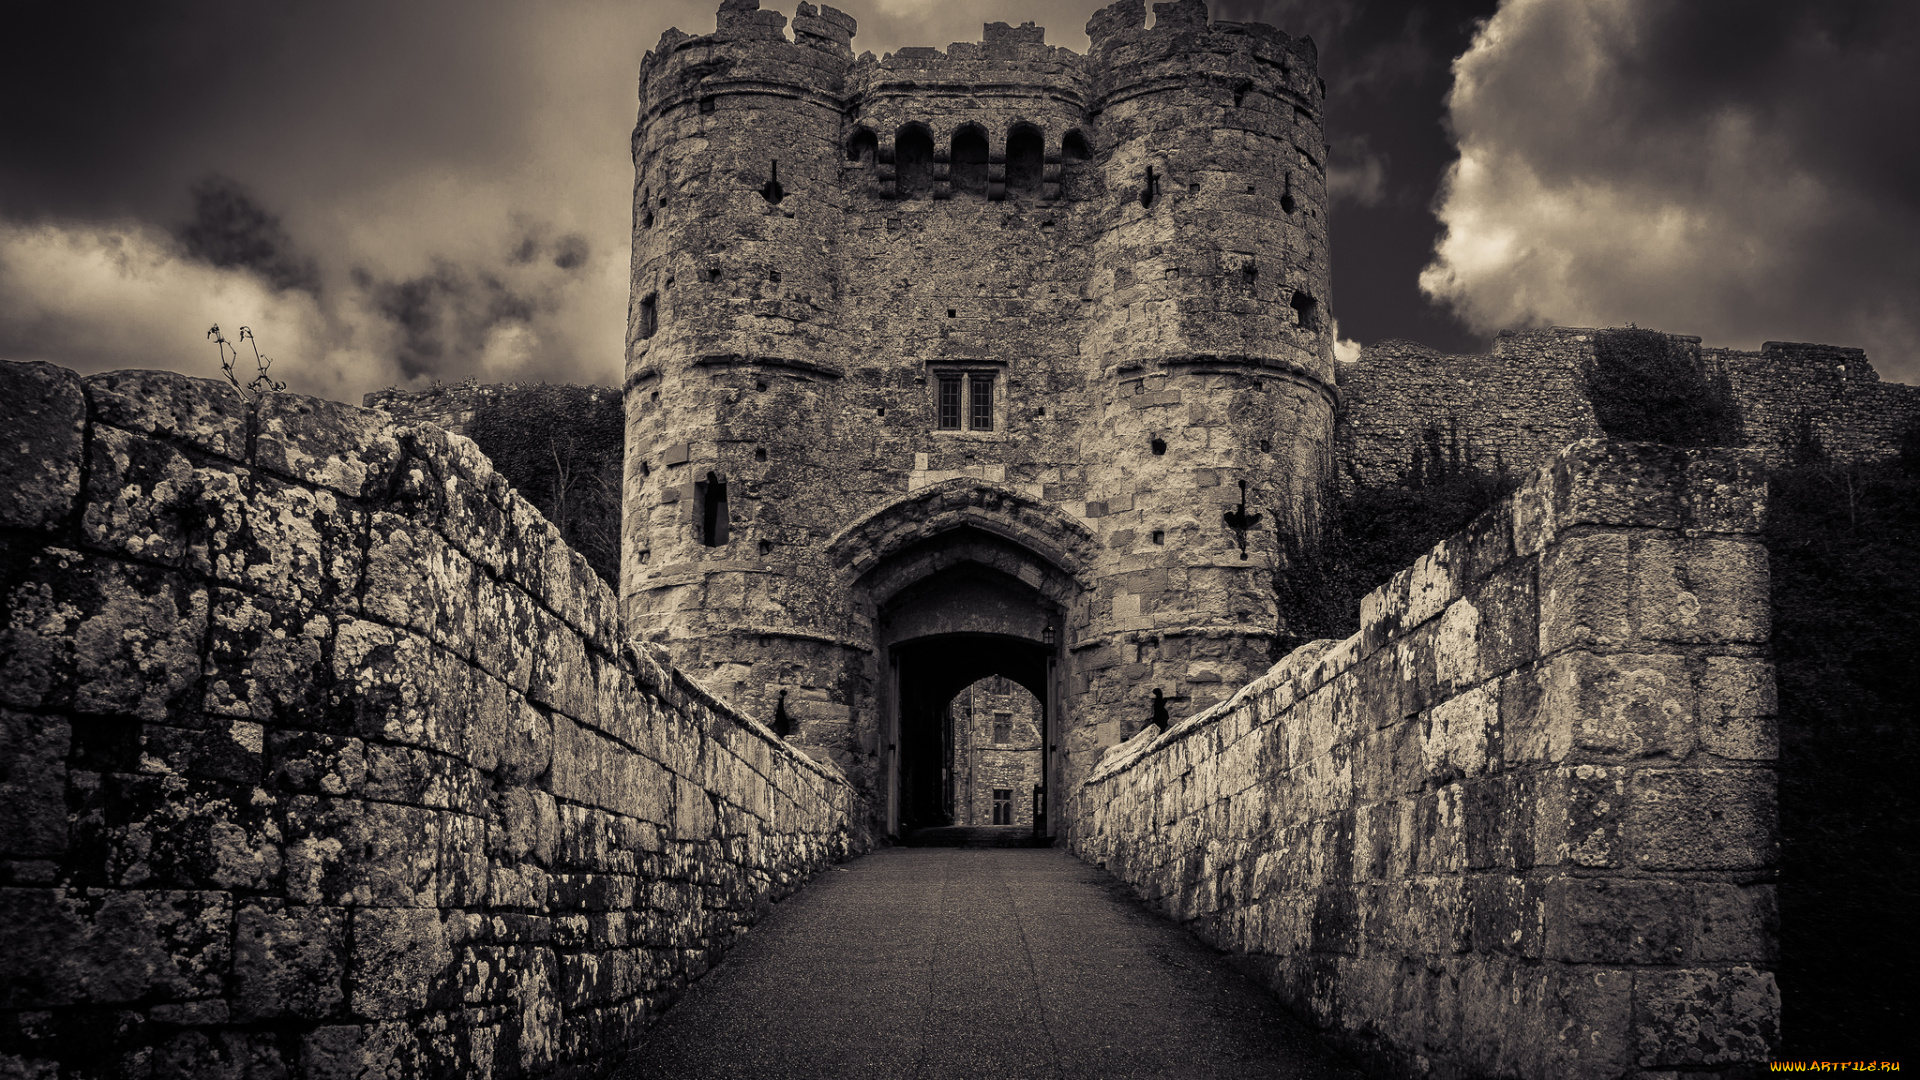 carisbrooke, castle, gate, города, дворцы, замки, крепости, ворота, стены, башни, замок